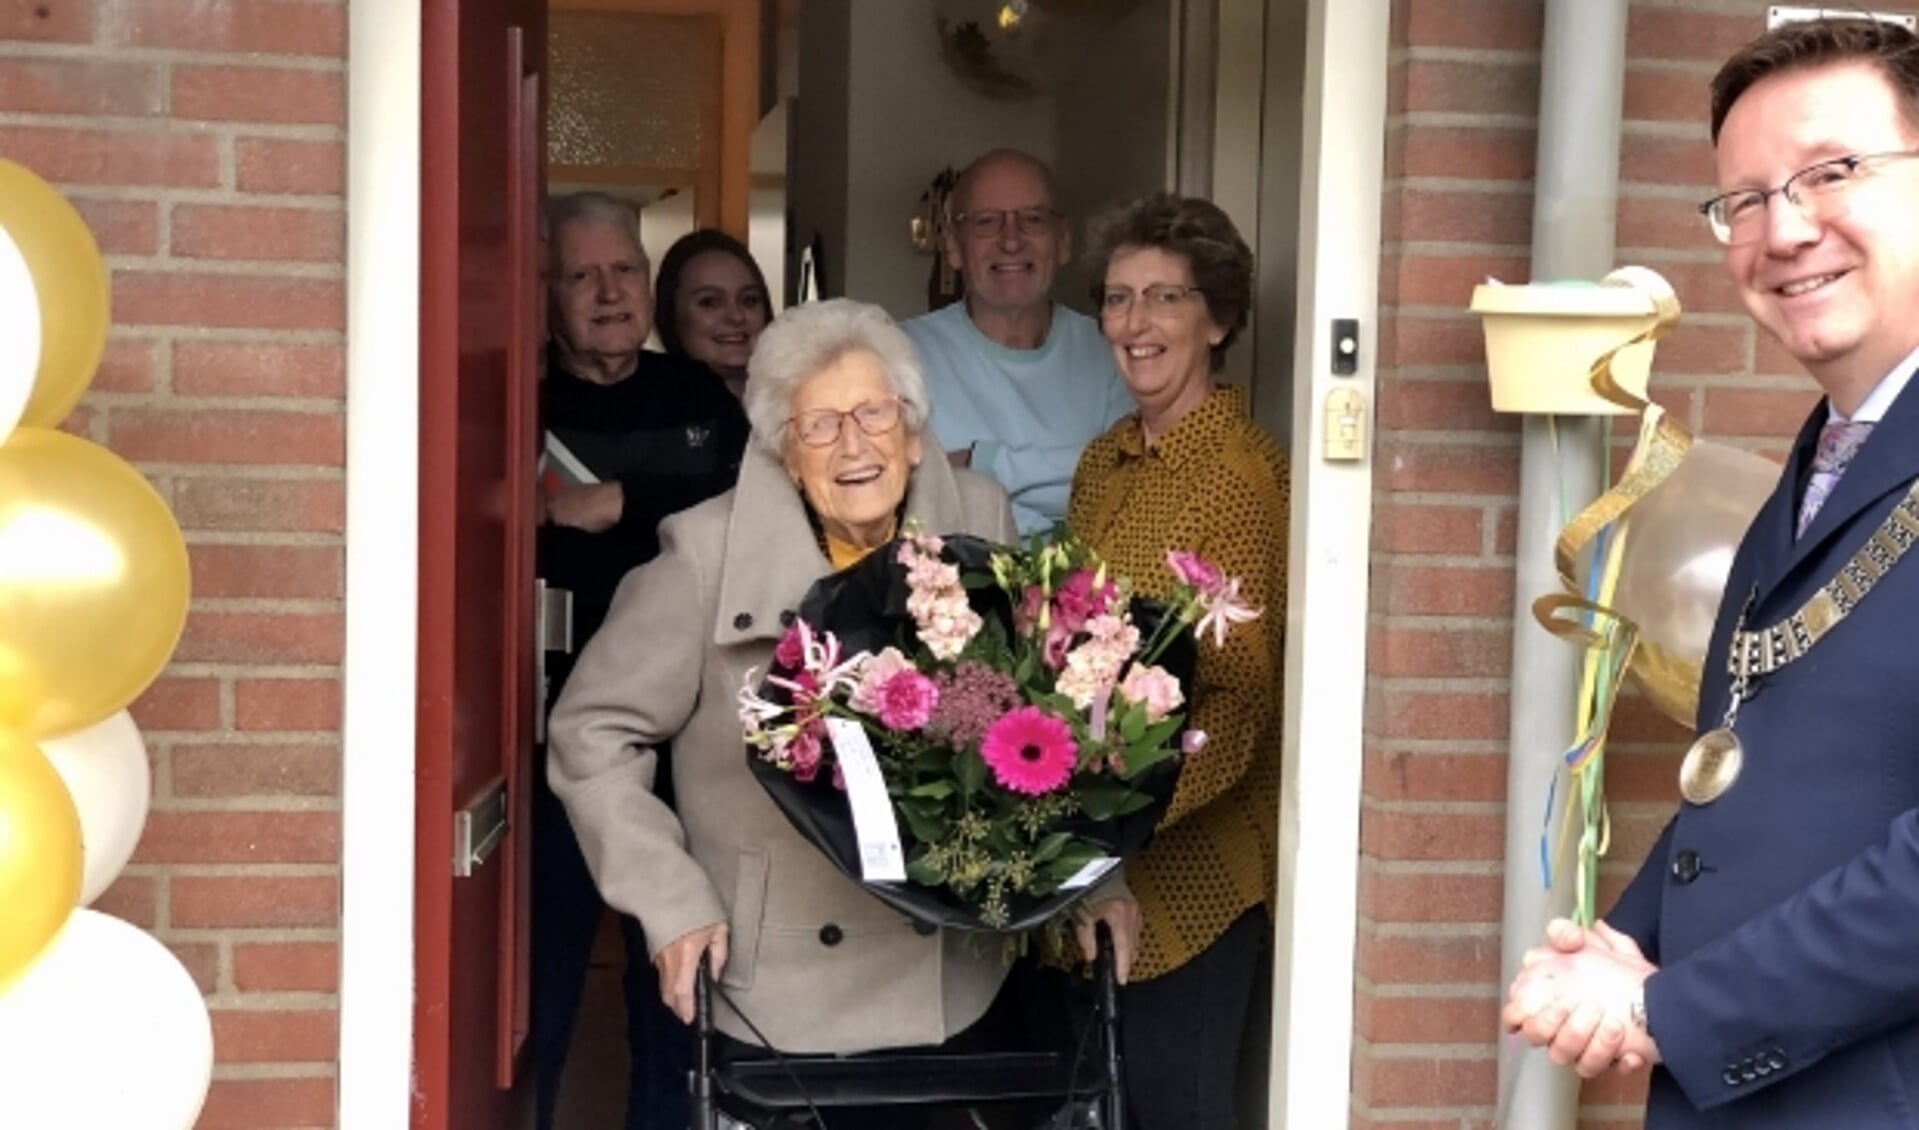 Omringd door haar kinderen ontvangt mevrouw Walschots de burgemeester aan de deur, waar ze - op afstand - ruimschoots de tijd neemt voor een gezellig praatje. (Foto: Lysette Verwegen)